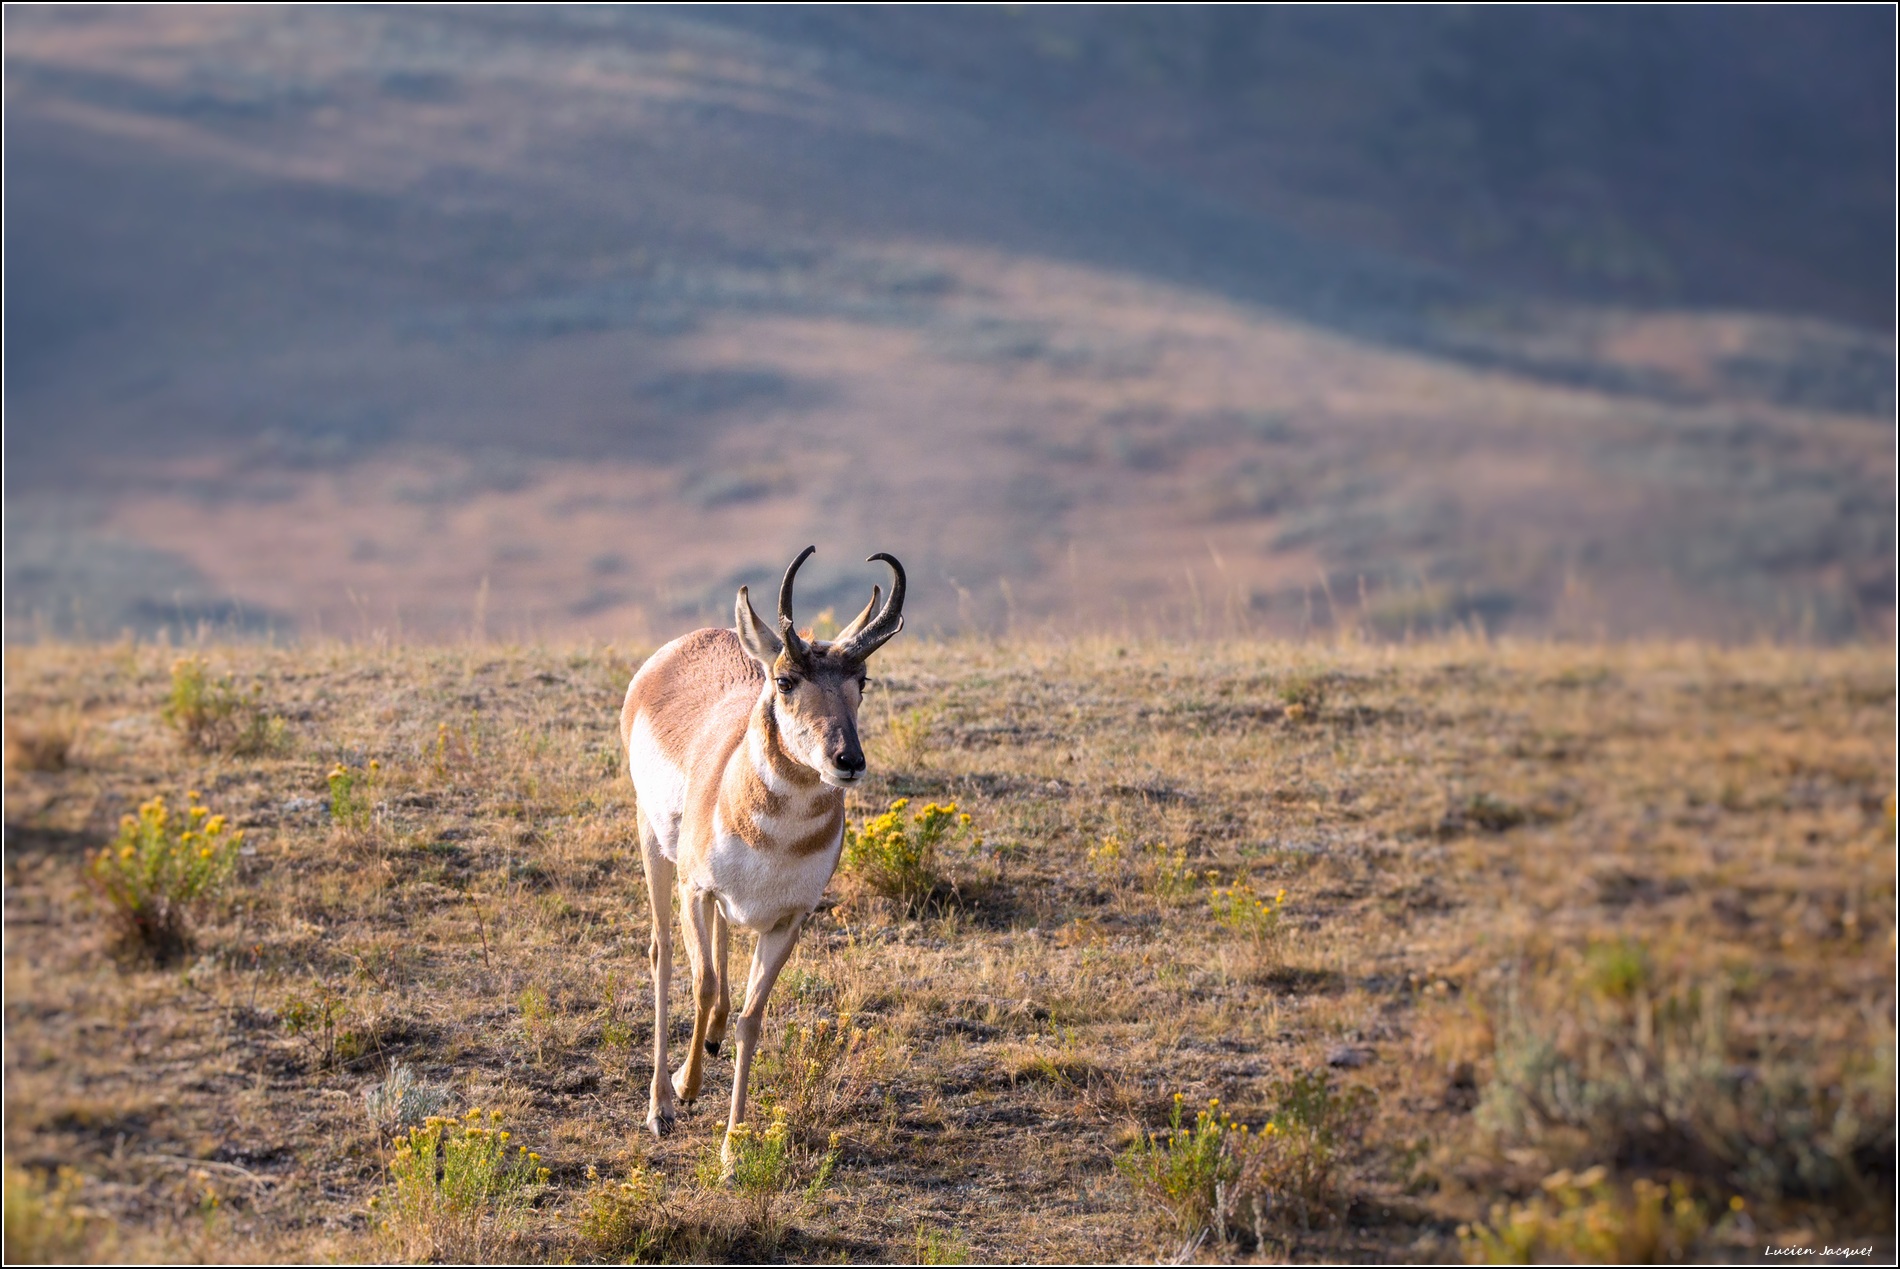 Pronghorn, antilope d'Amèrique du nord